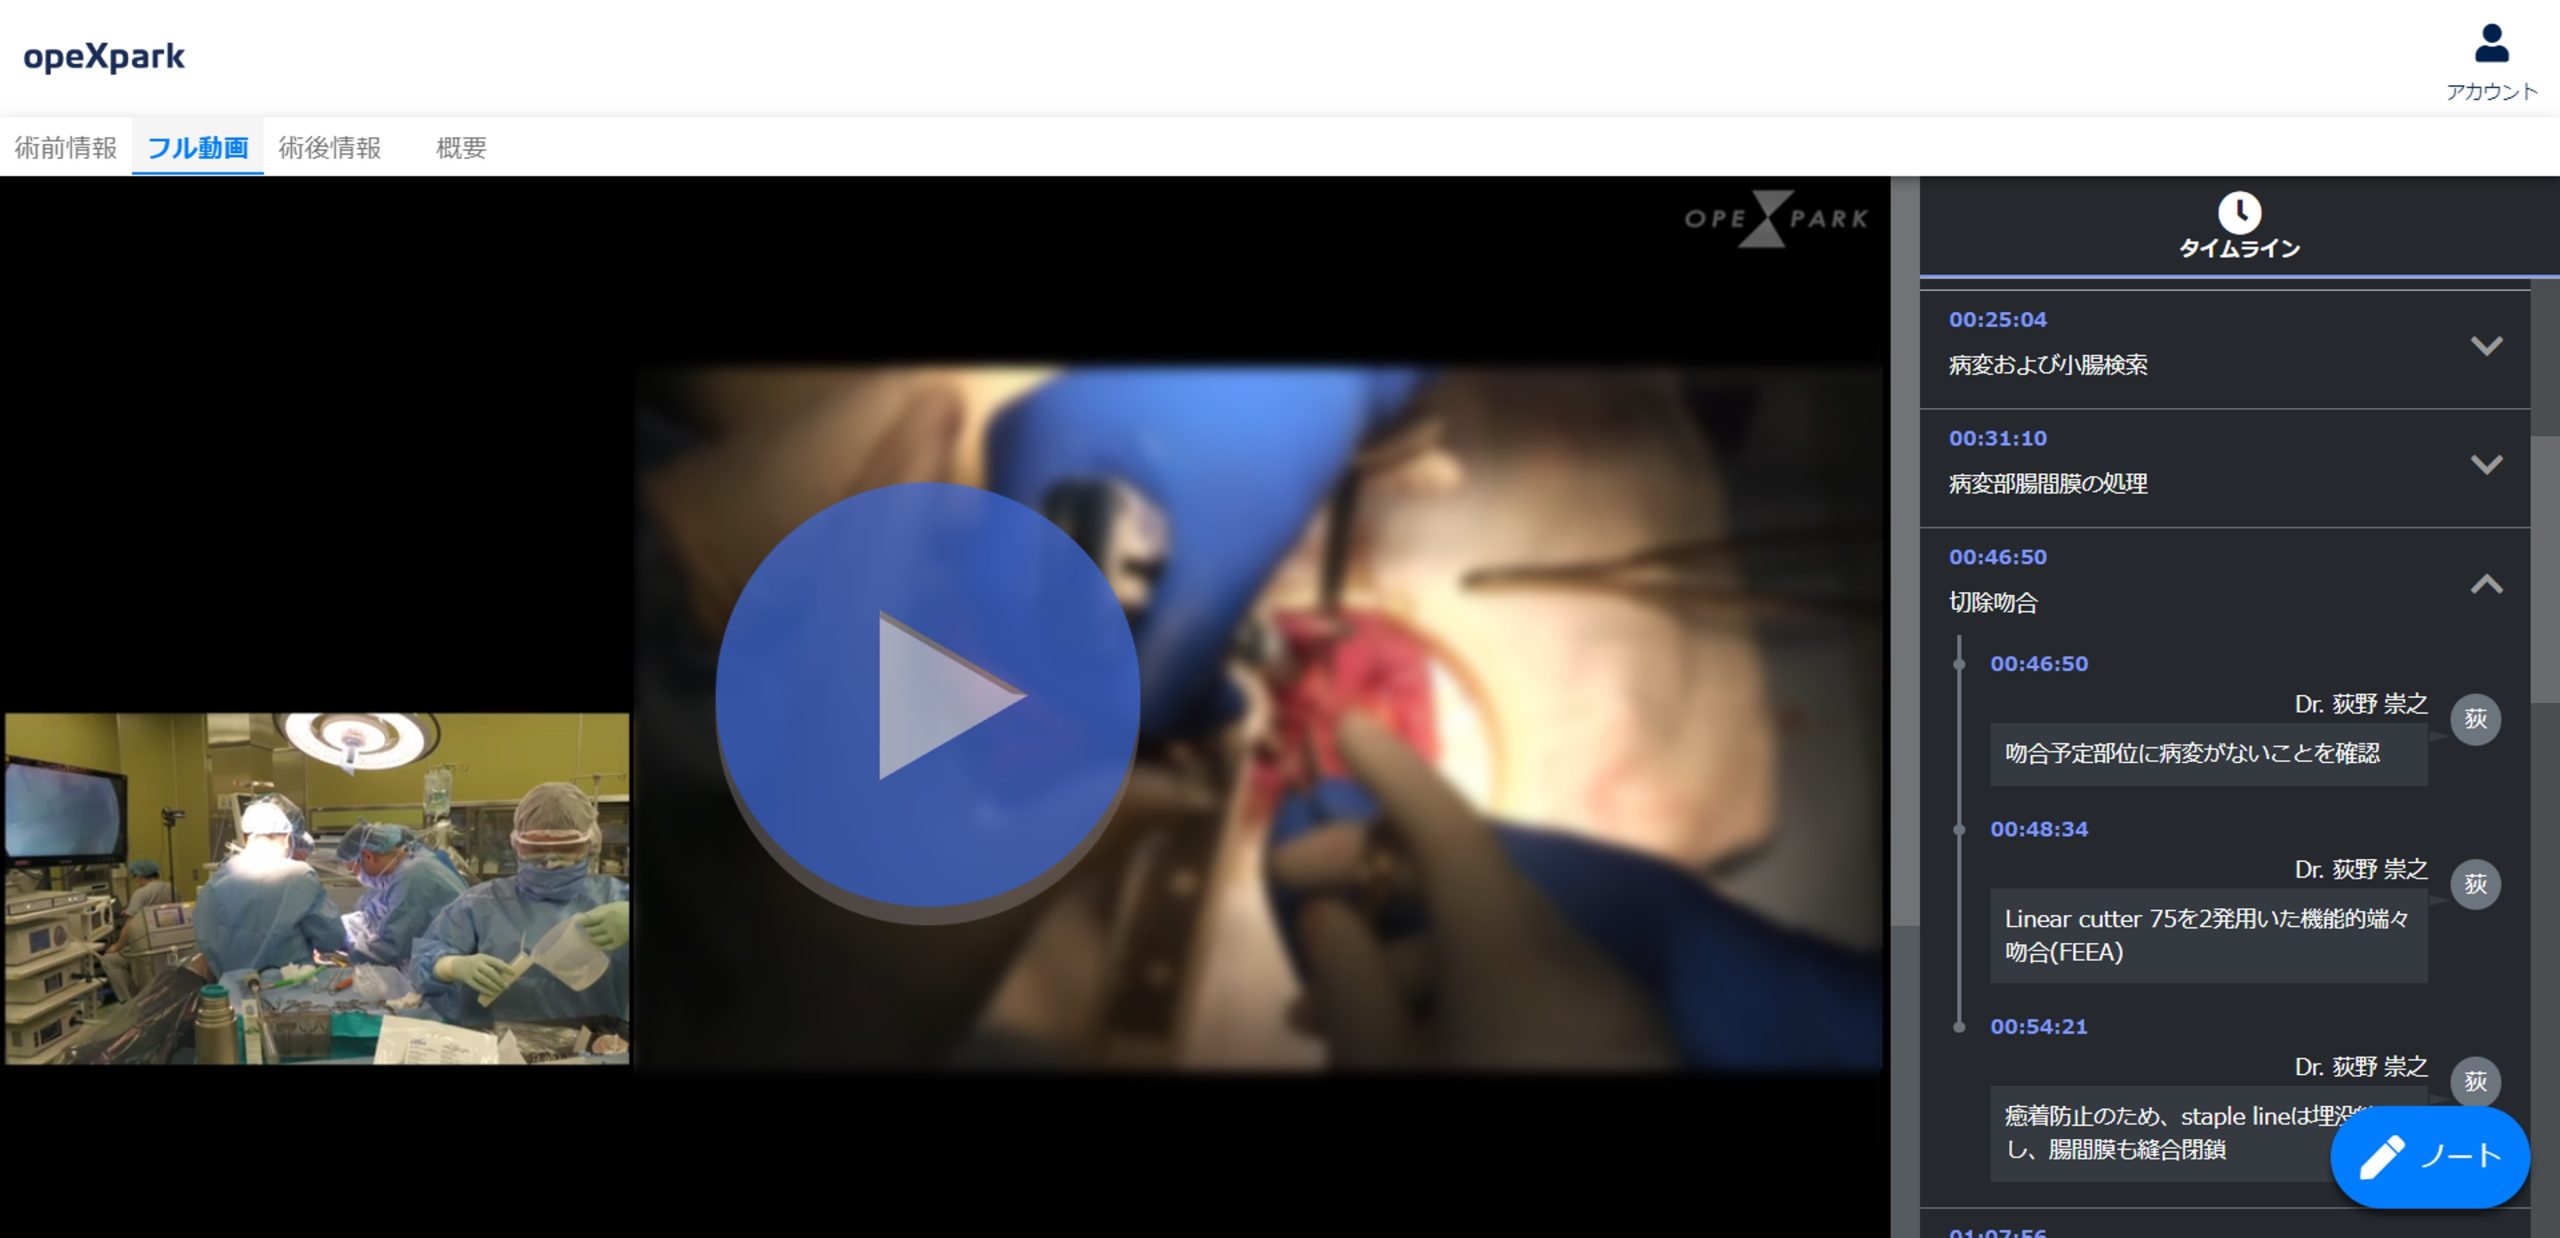 「クローン病に対する腹腔鏡下回盲部切除術」のサムネイル画像